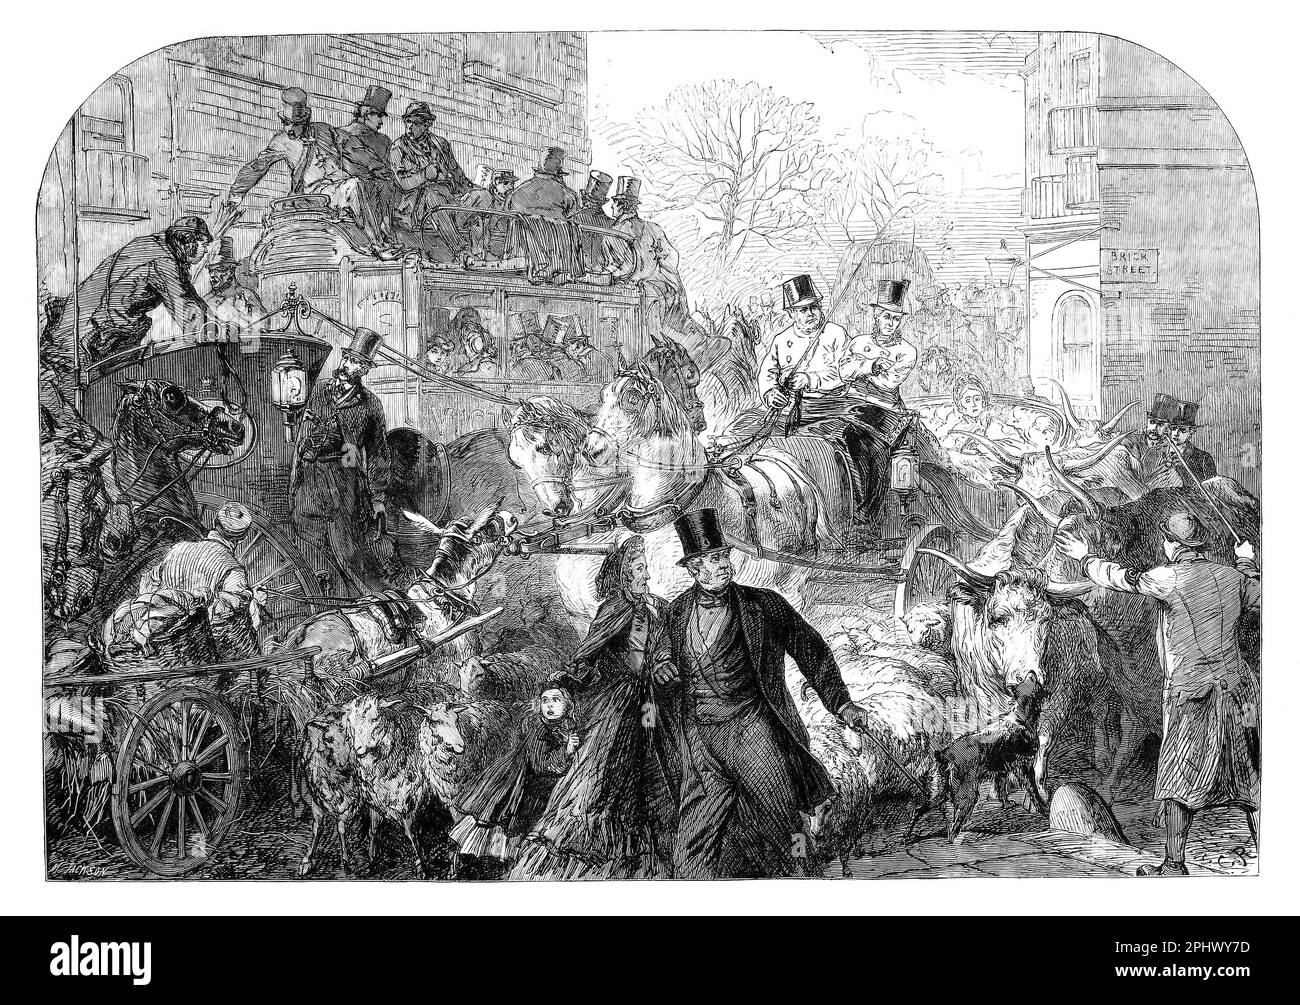 Park Lane à Londres, en Angleterre, était à l'origine une simple ruelle de campagne sur la frontière de Hyde Park, et partagée par des entraîneurs de scène, des voitures, des troupeaux de bétail et des troupeaux de moutons, des embouteillages se sont produits. La route s'est développée en popularité au cours du 19th siècle après des améliorations à Hyde Park Corner et des vues plus abordables du parc, qui a attiré le nouveau riche à la rue et l'a conduit à devenir l'une des routes les plus à la mode de vivre sur Londres. Banque D'Images